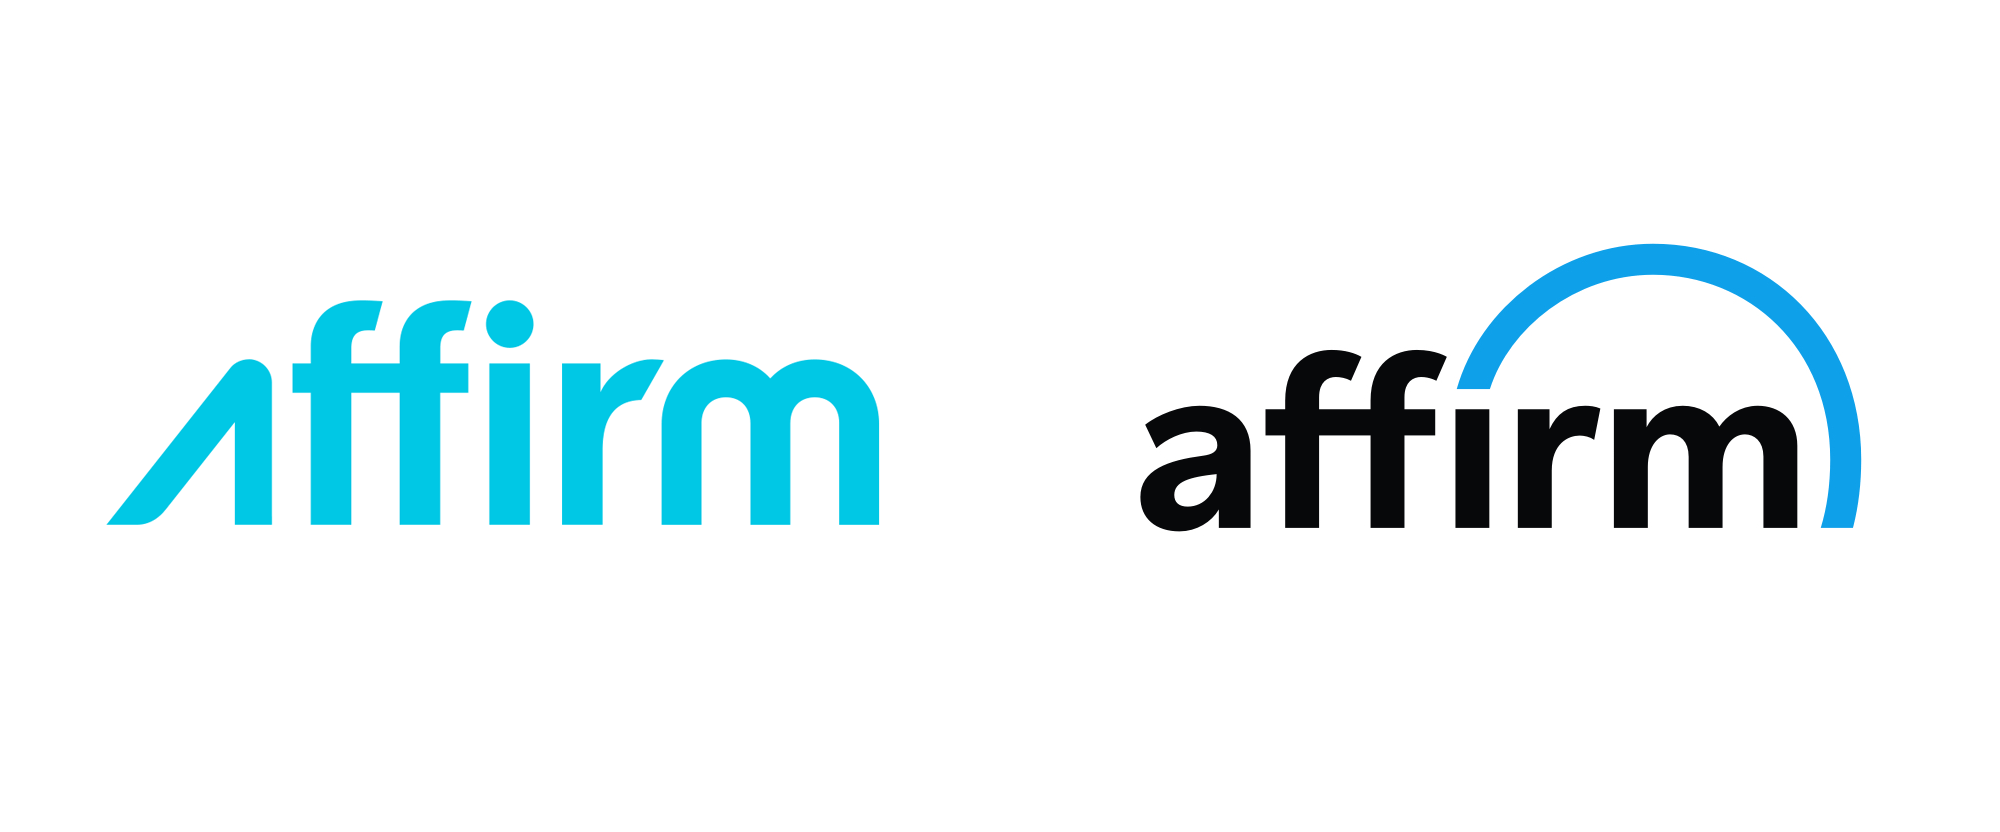 Affirm Logo - Brand New: New Logo for Affirm